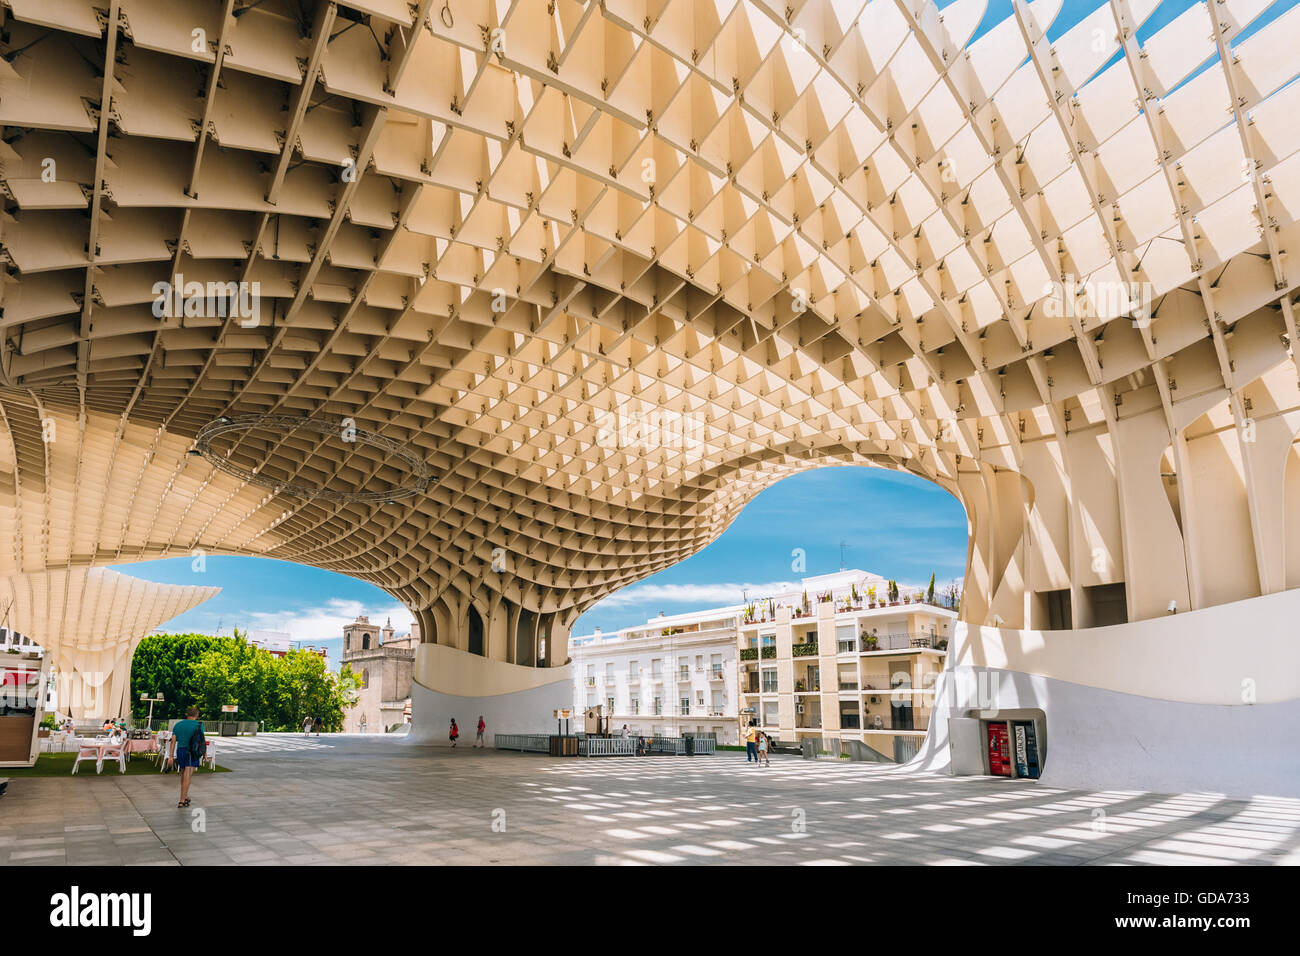 Séville, Espagne - 24 juin 2015 : Metropol Parasol est une structure en bois situé à Plaza de la Encarnacion square, dans le vieux quartier de Banque D'Images